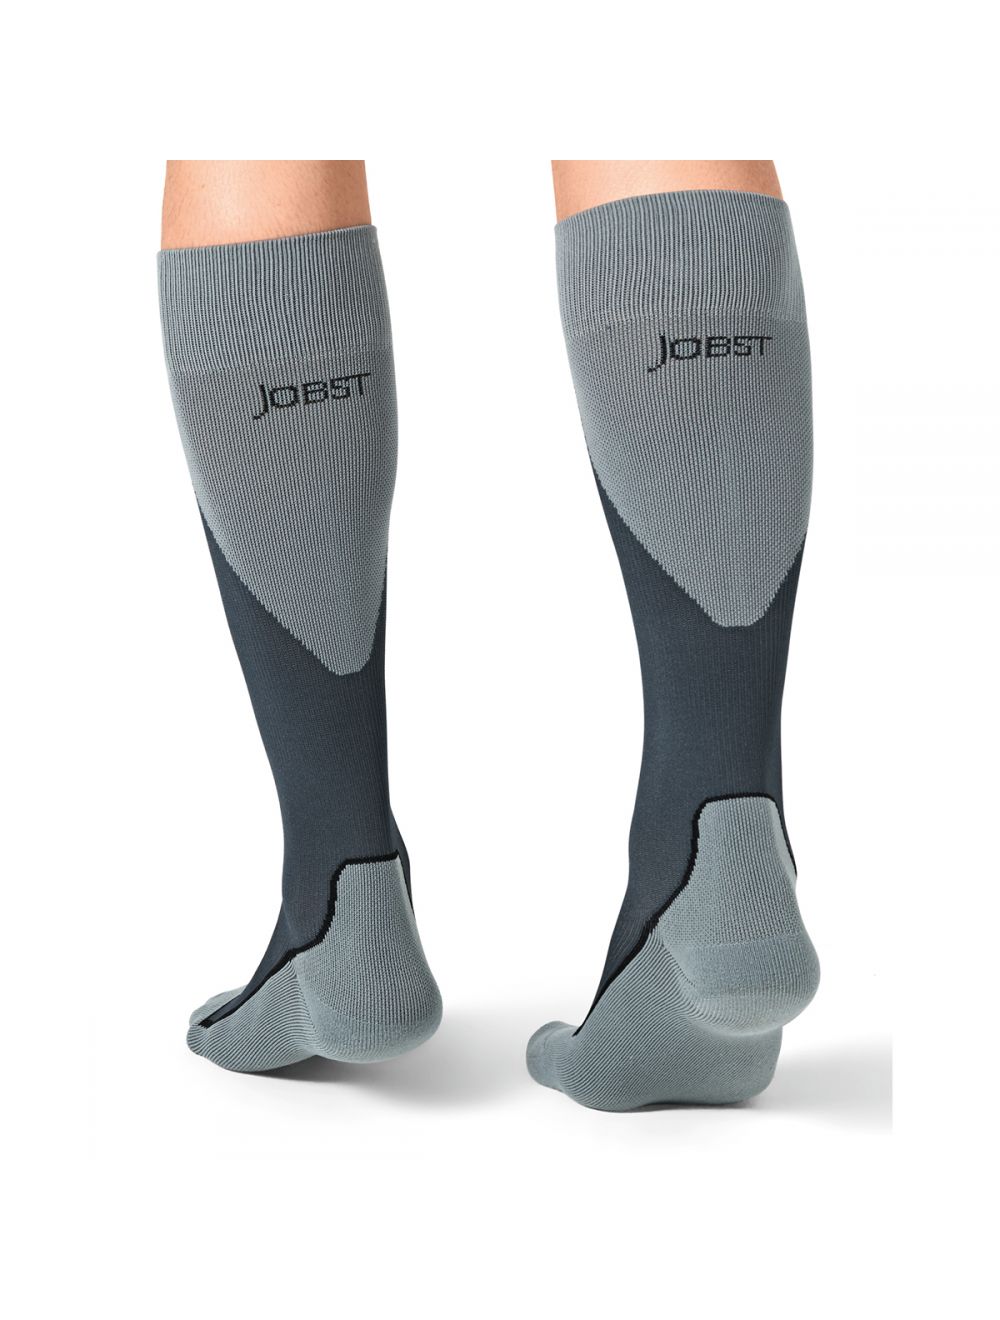 Jobst Unisex Sport Knee High 20-30mmHg